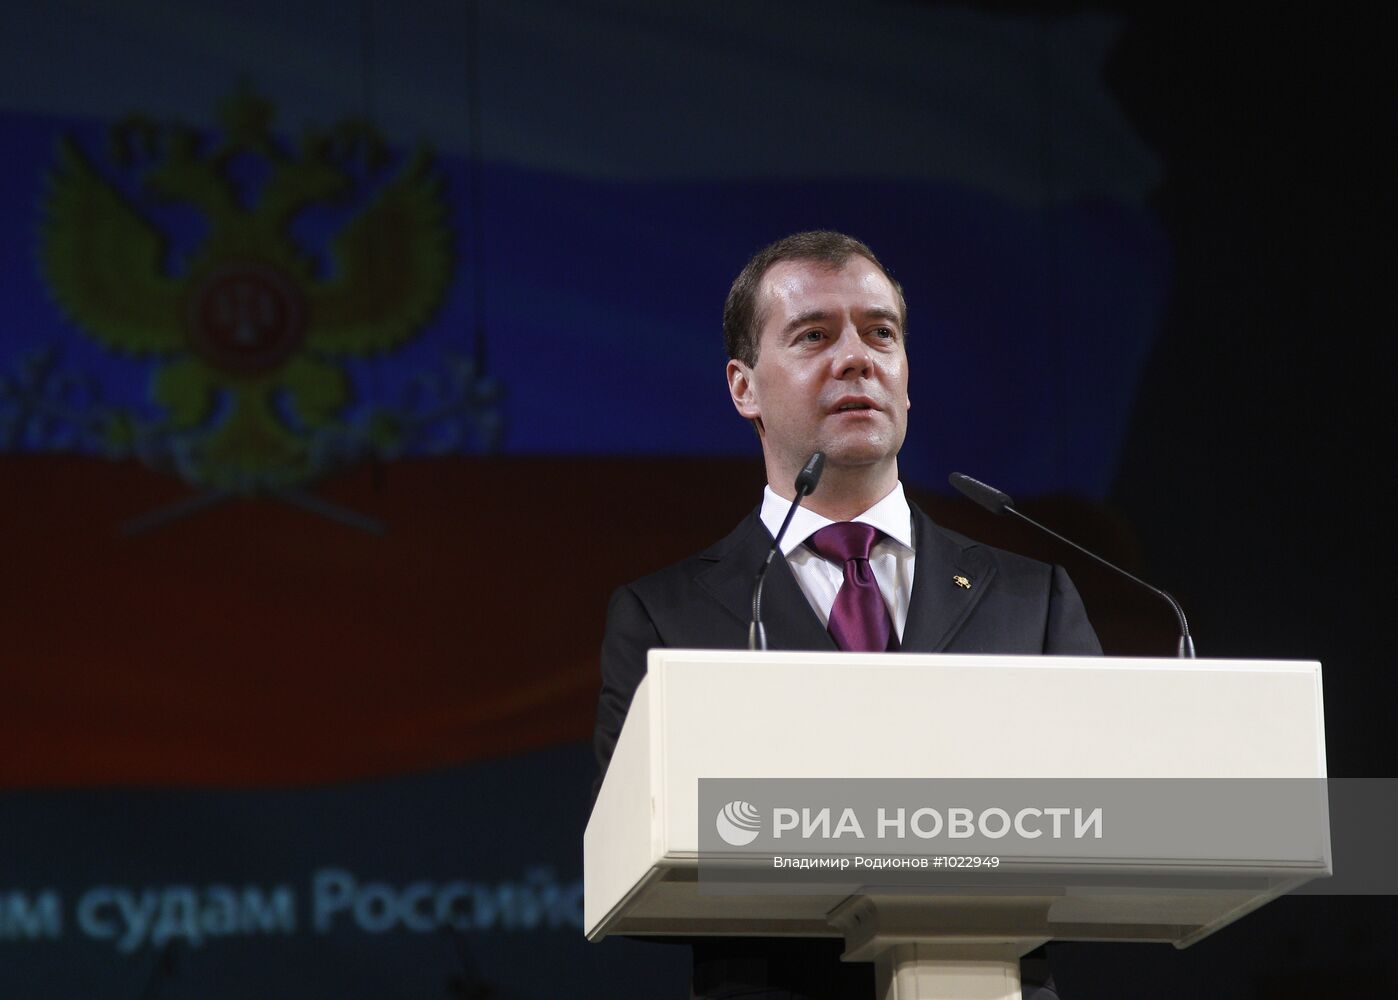 Д.Медведев поздравил арбитражных судей с 20-летием системы